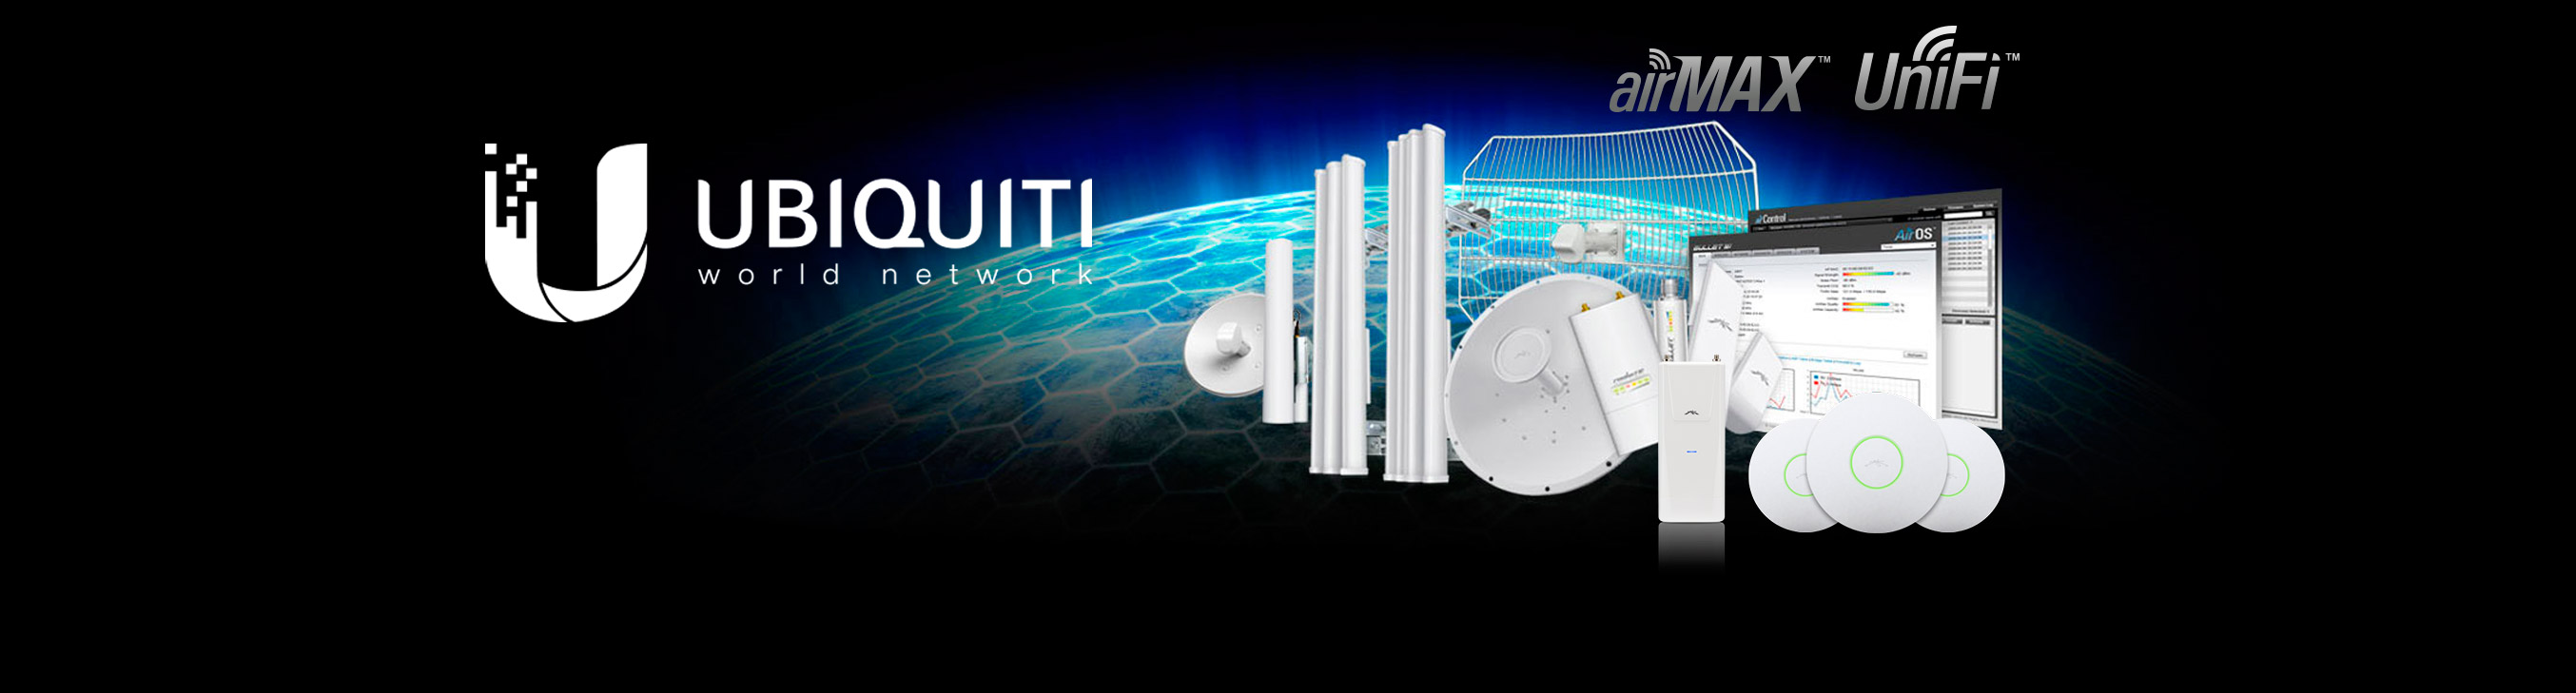 Ubiquiti Networks, Distribuidor de telecomunicaciones